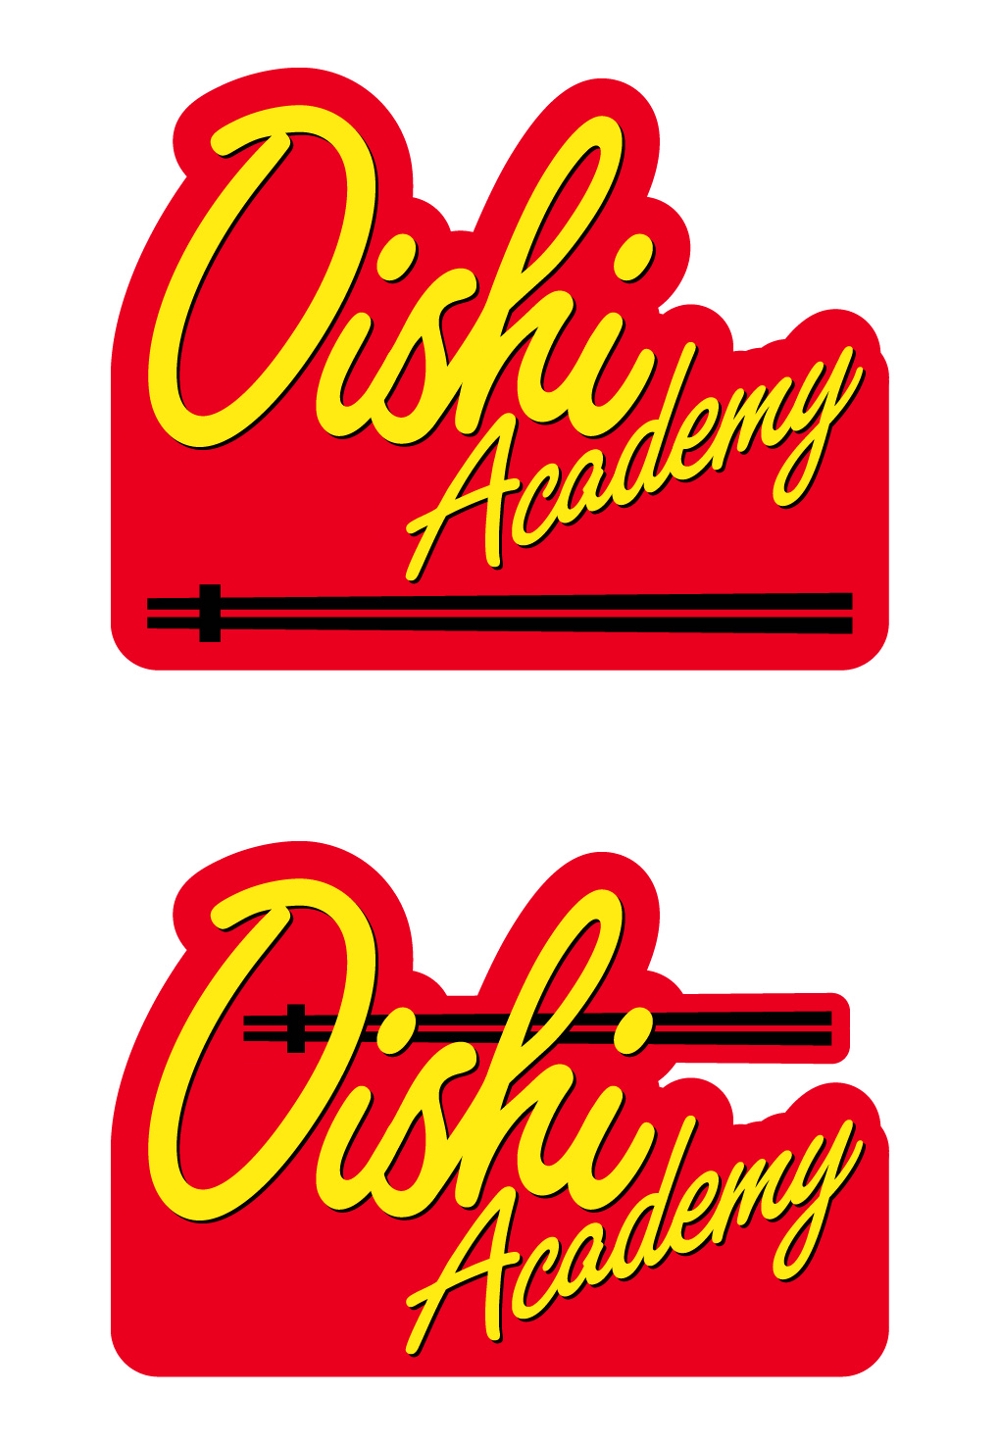 海外向け日本食発信サービス！OISHI ACADEMY（オイシイ・アカデミー）のロゴ